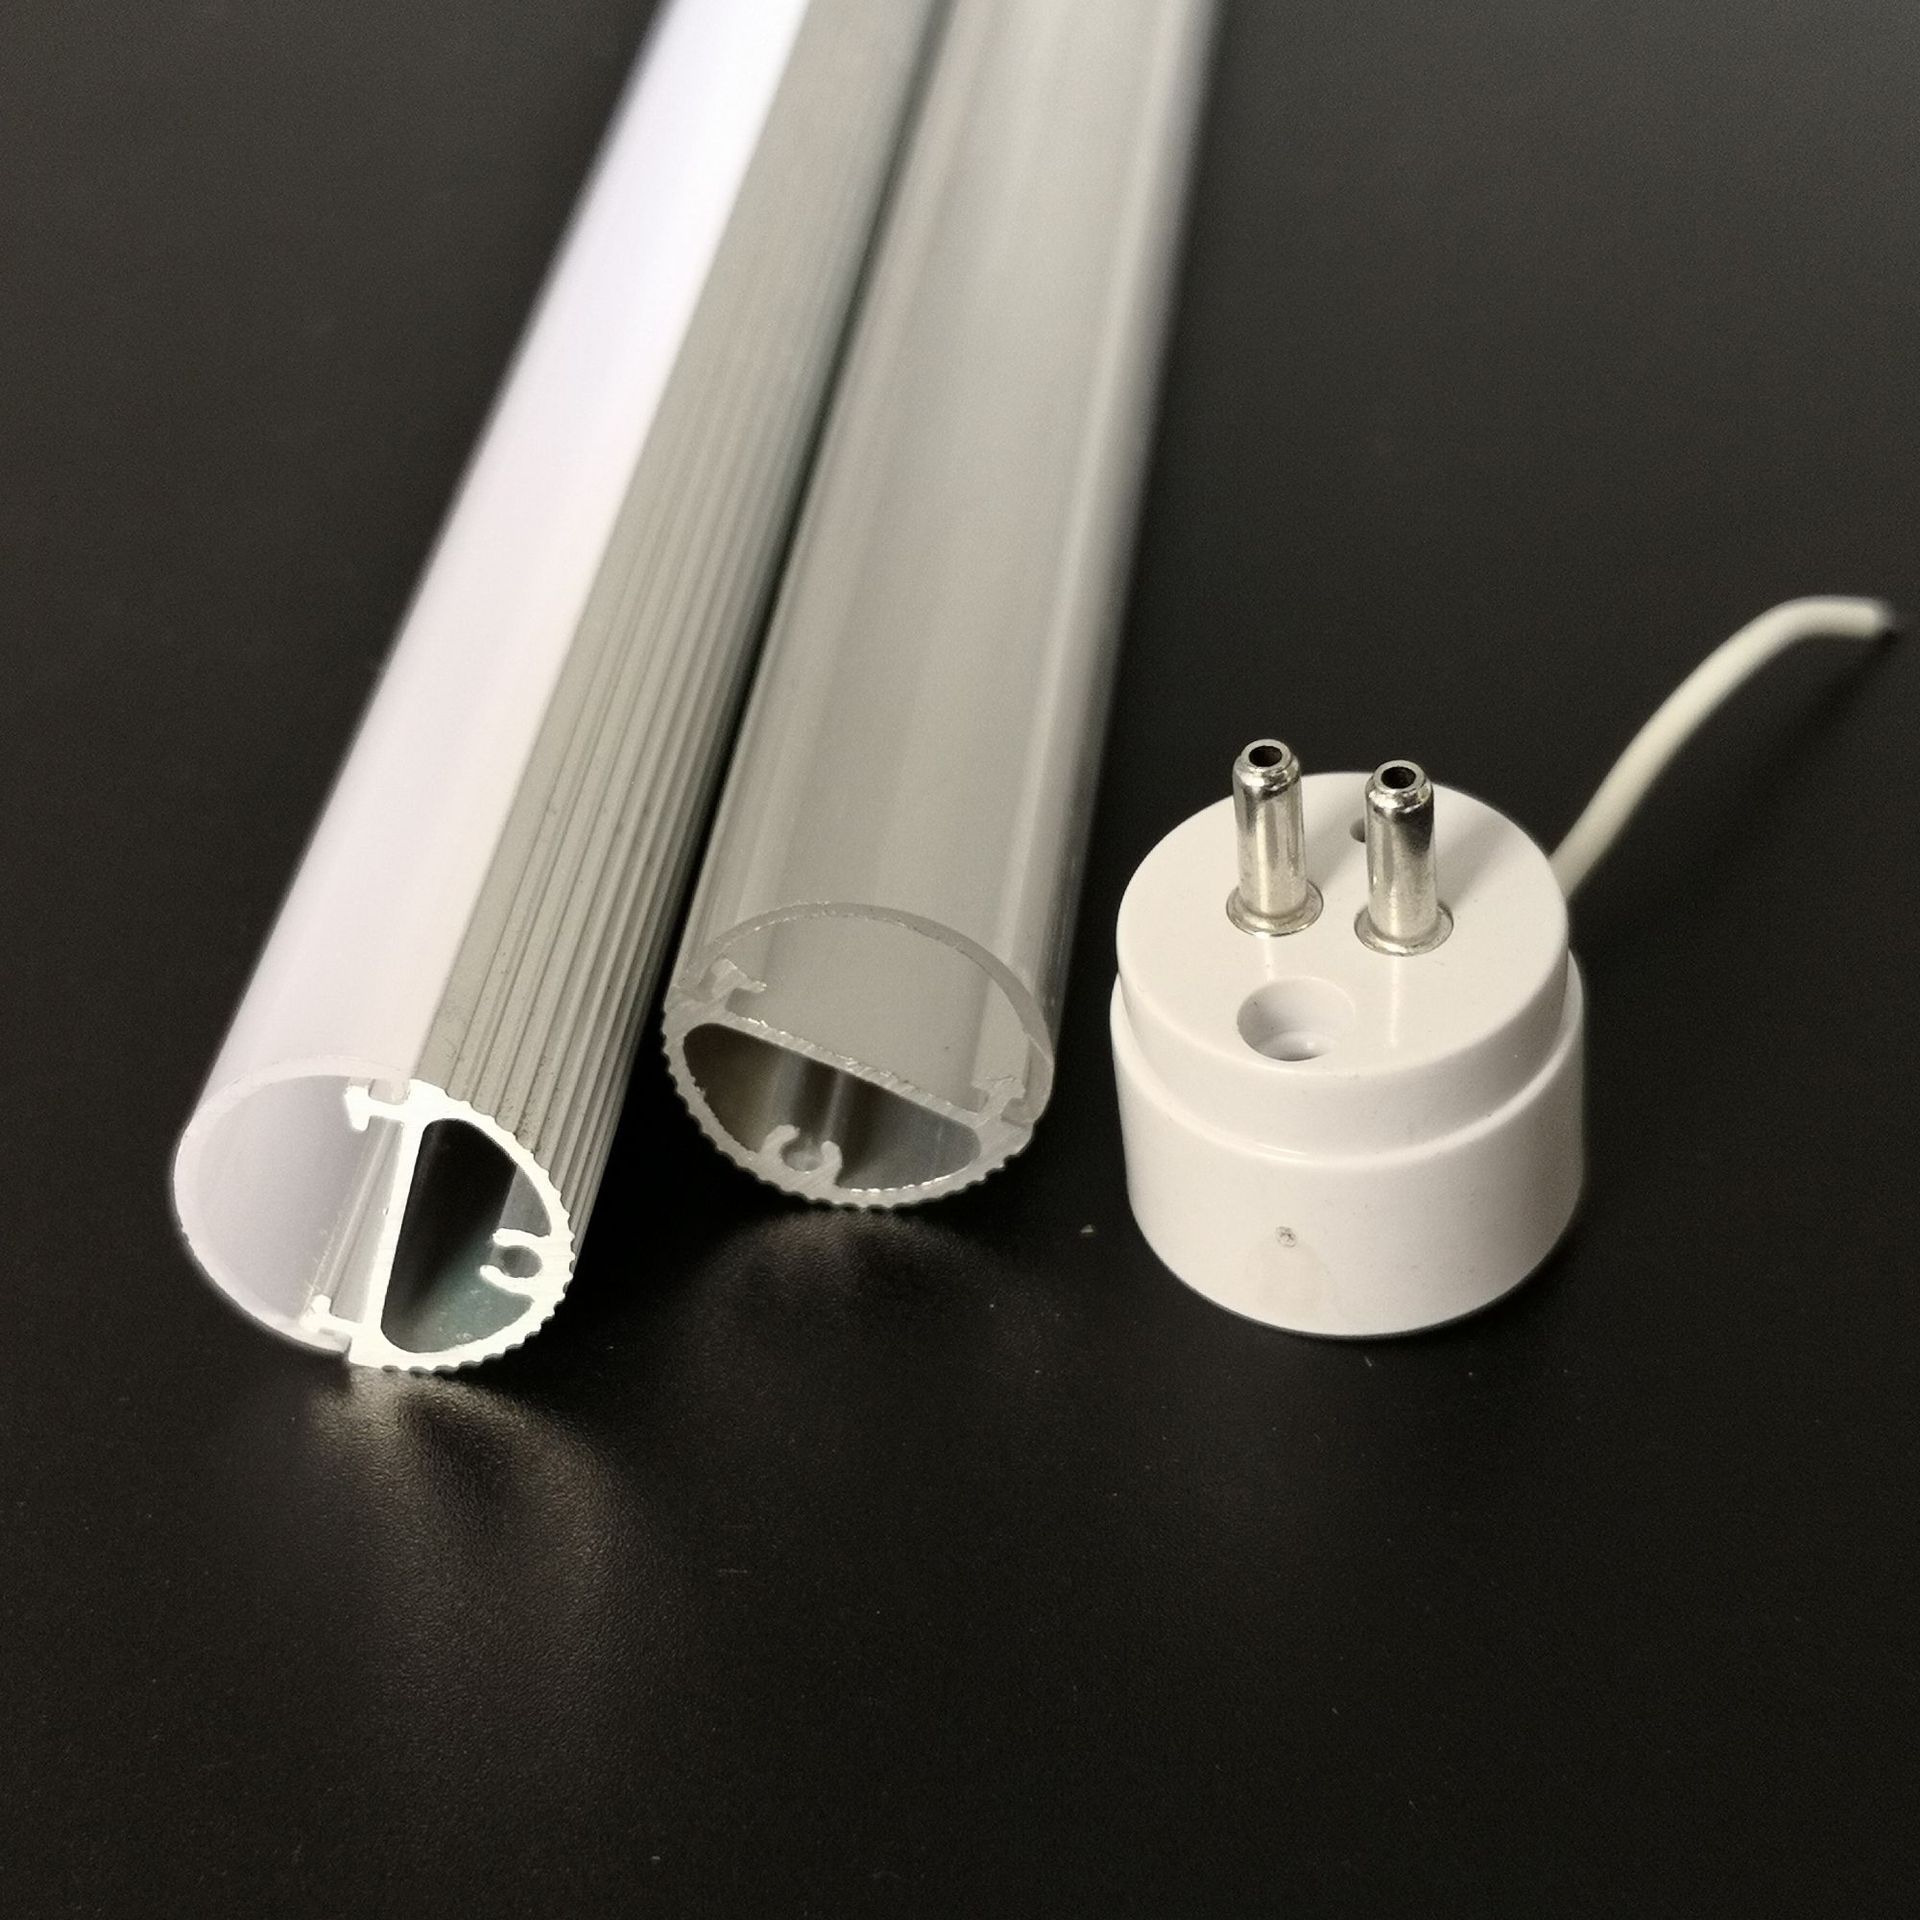 Cosas a tener en cuenta al reemplazar los tubos tradicionales por tubos LED